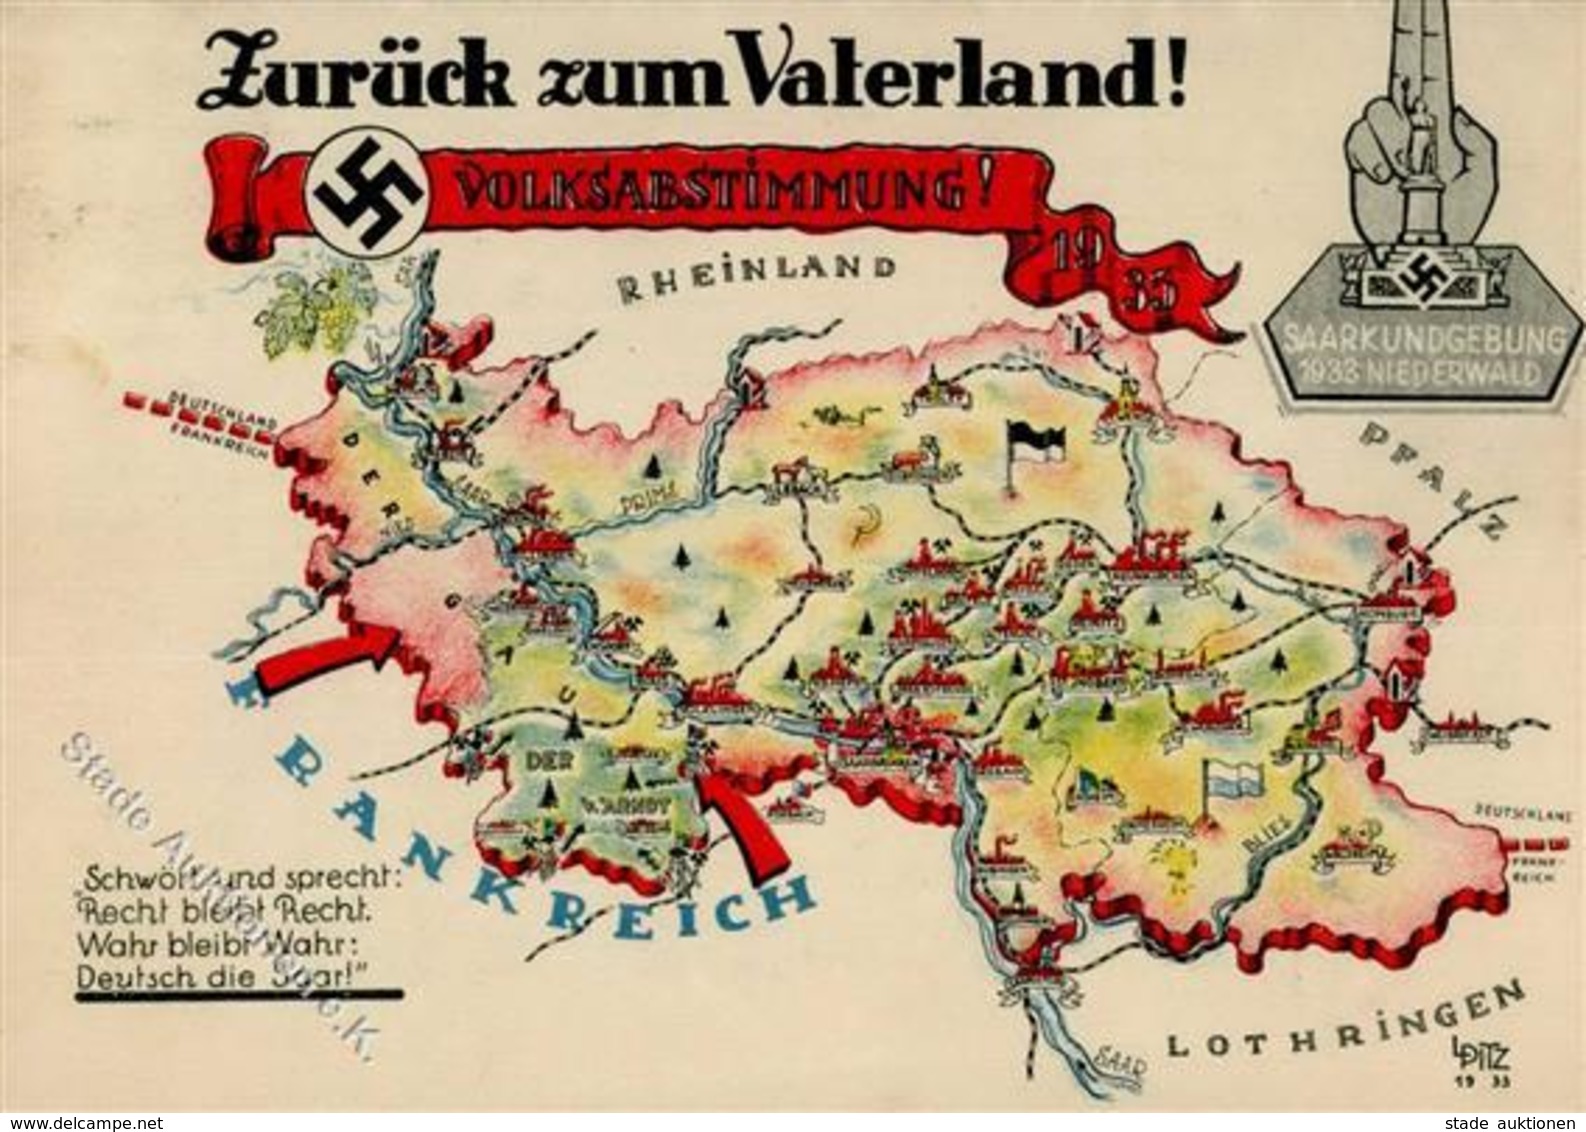 WK II Saarabstimmung Zurück Zum Vaterland I-II - Weltkrieg 1939-45